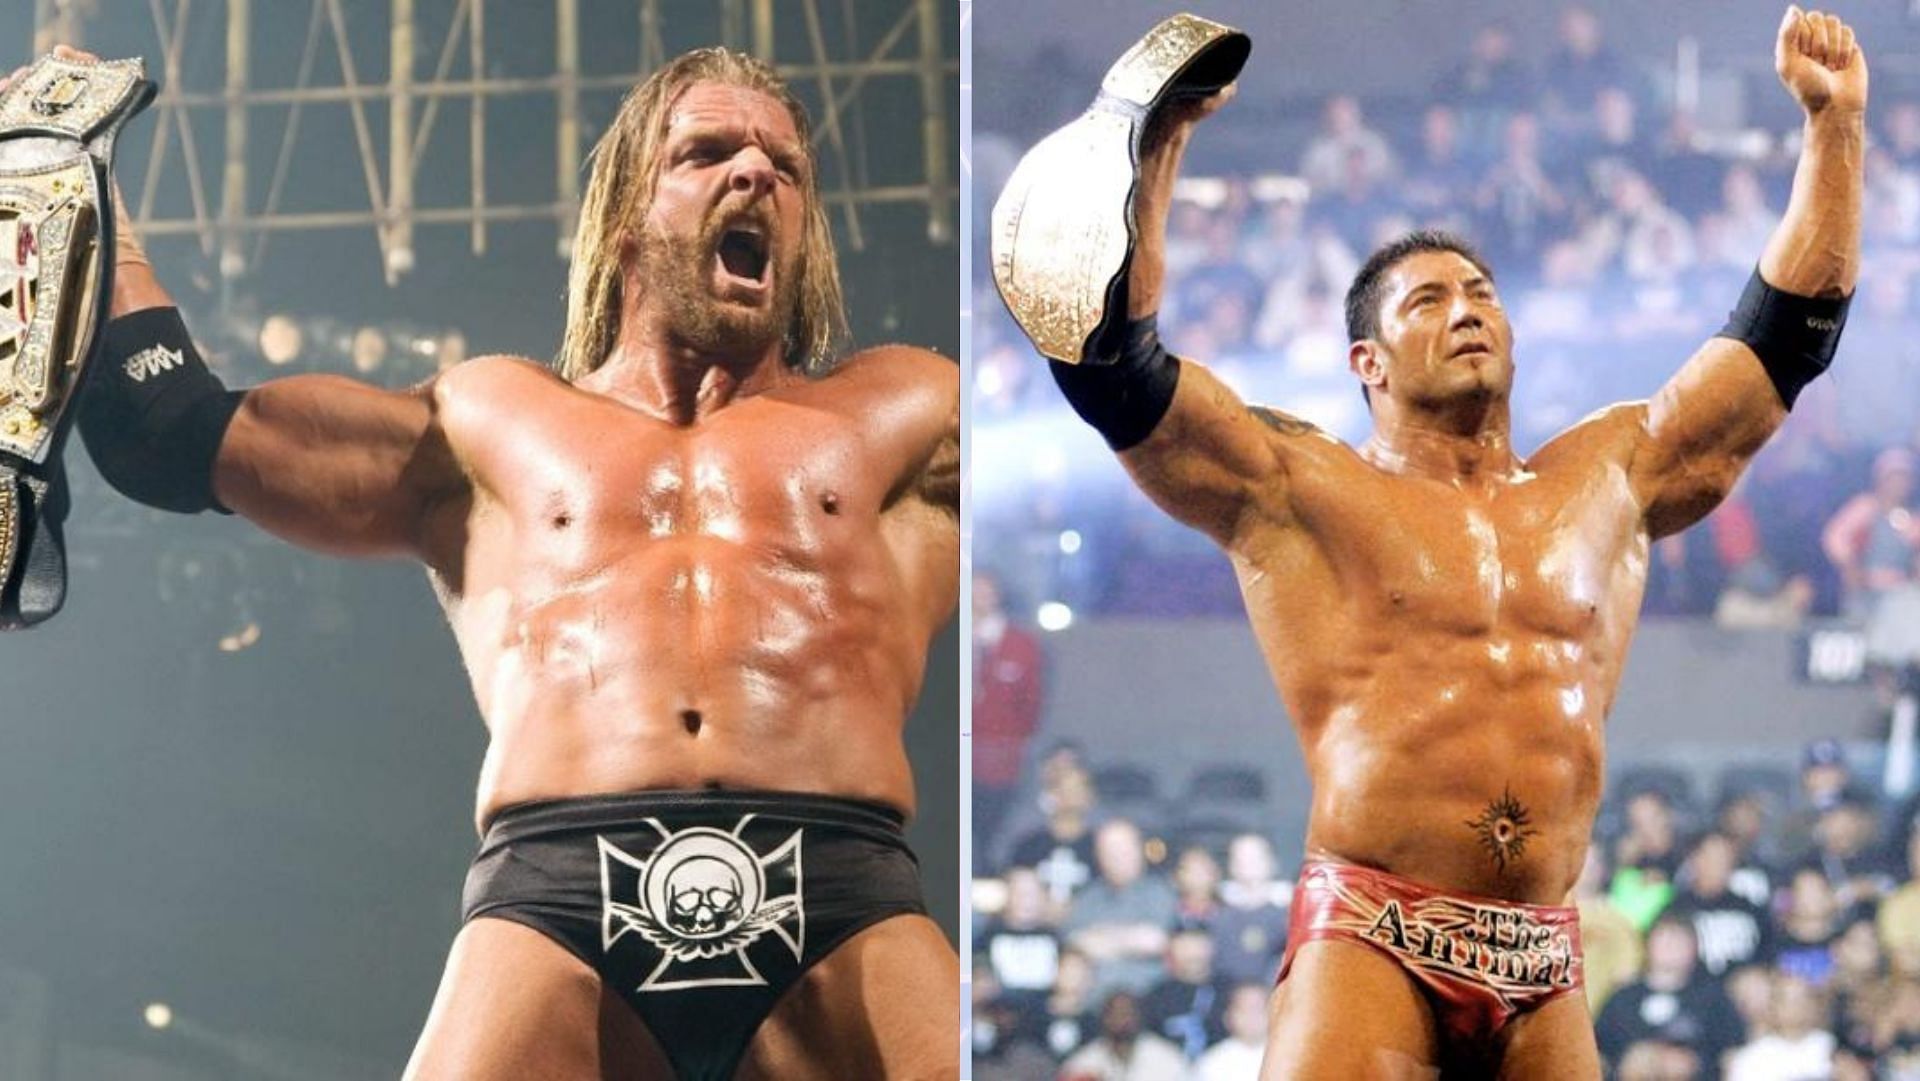 Triple H was Batista